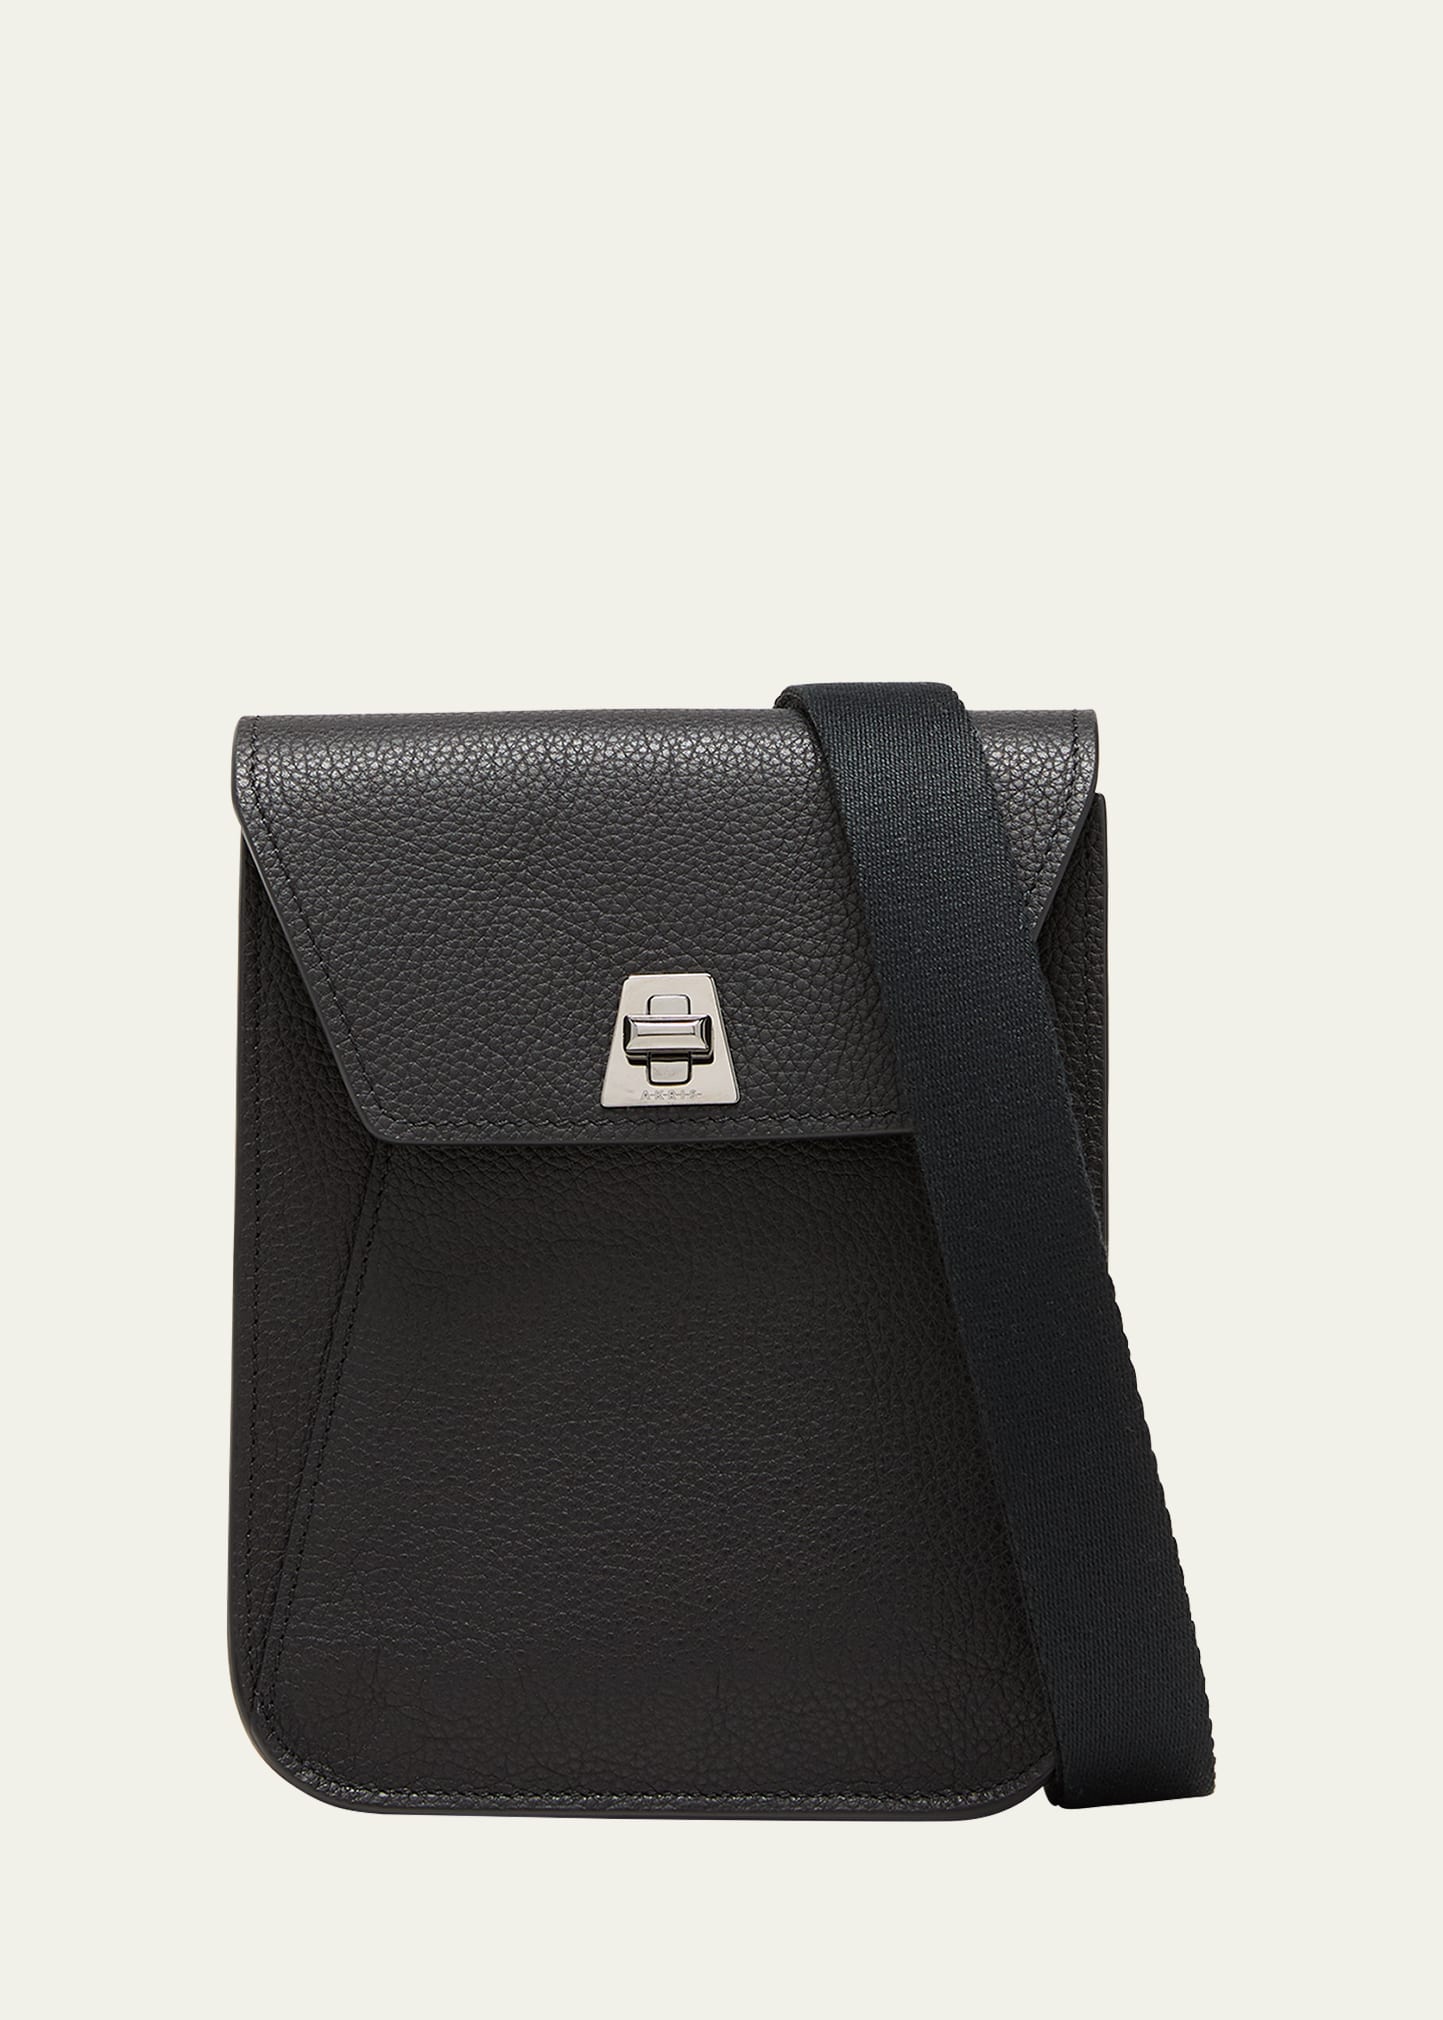 Anouk Mini Flap Leather Messenger Bag